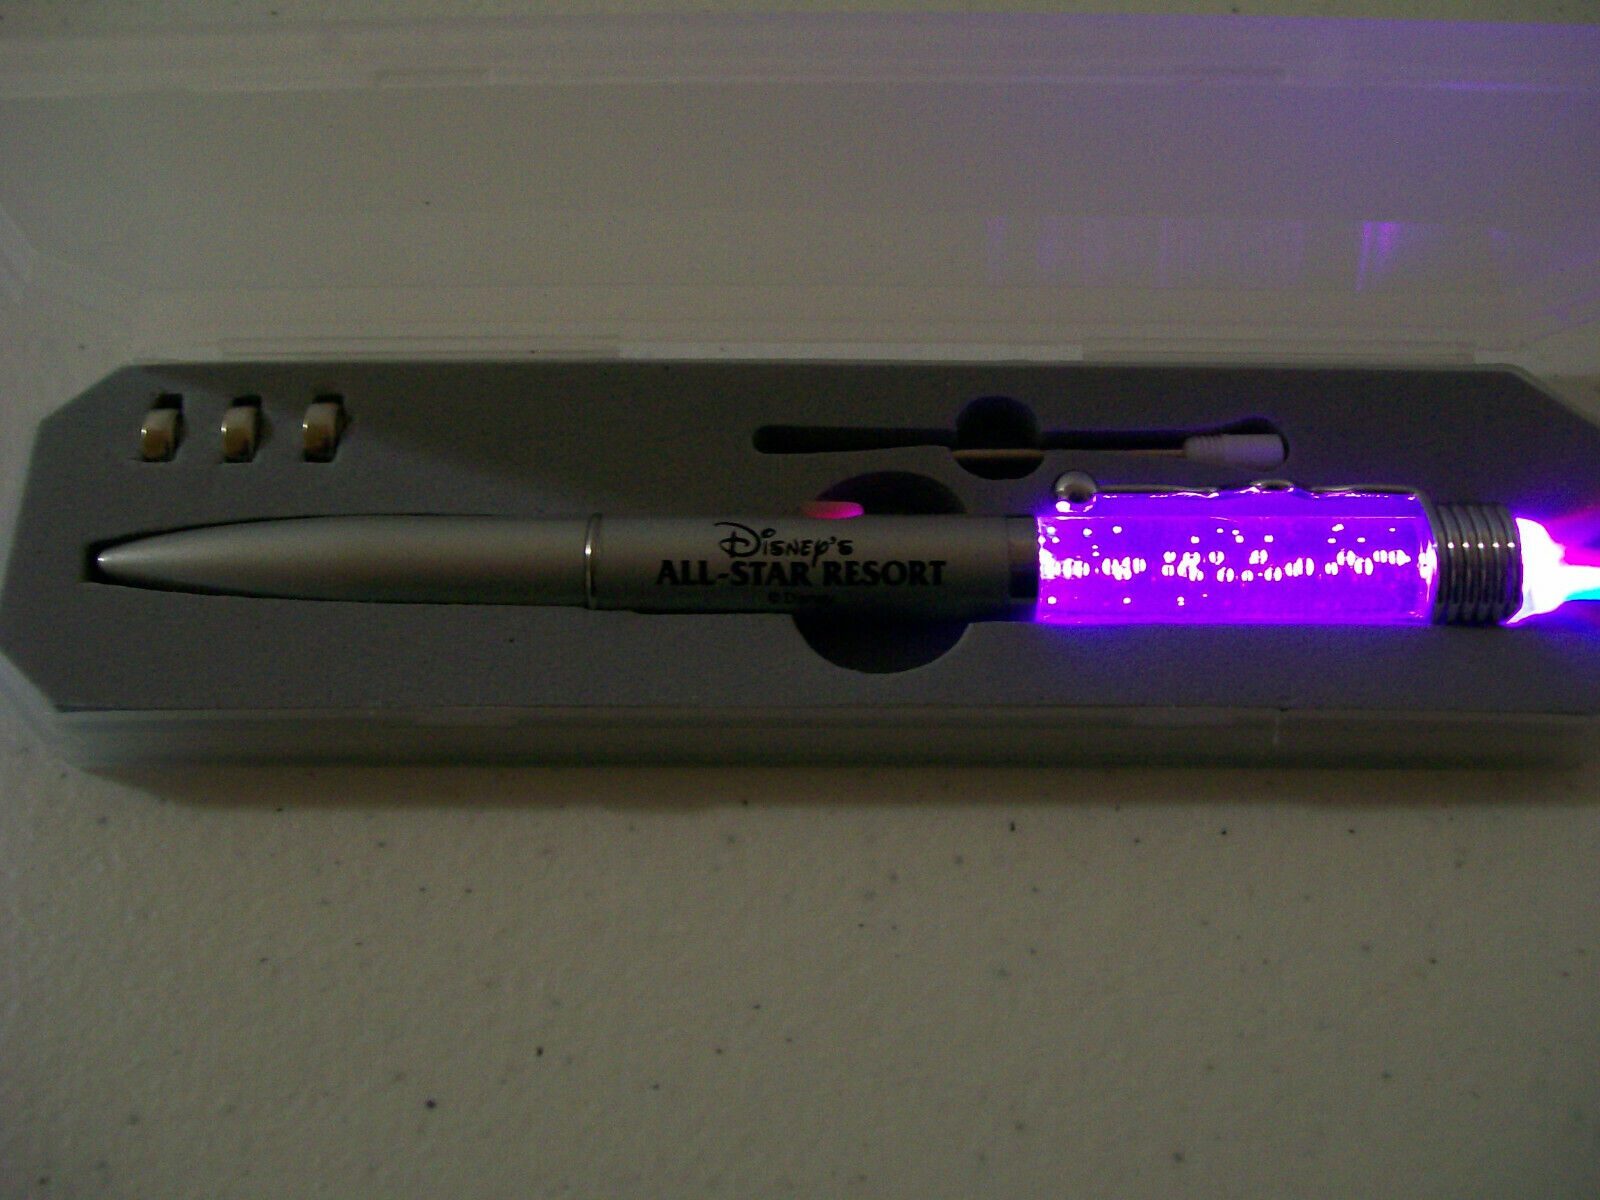 Disney's ALL STAR RESORT Light Pen 8 colors New in case